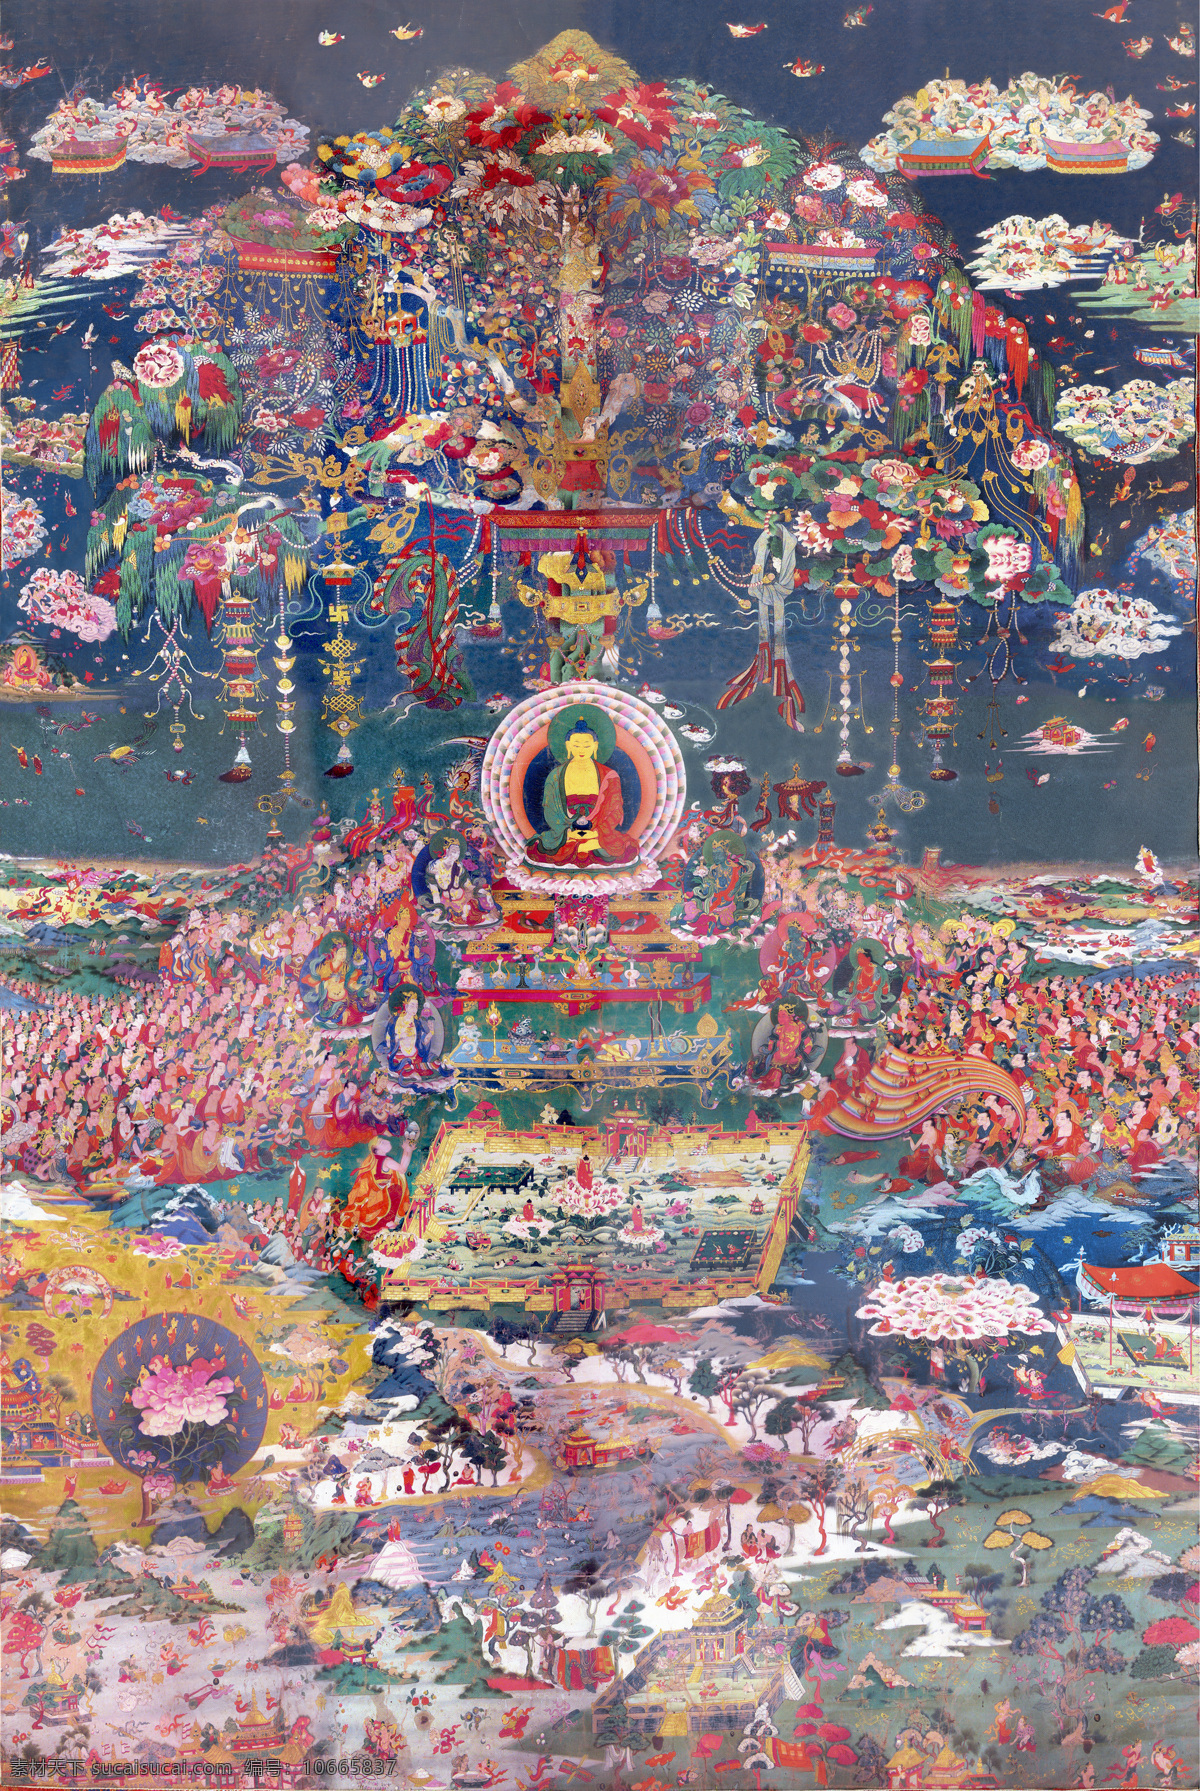 唐卡 佛教 藏传佛教 佛 宗教 宗教信仰 菩萨 西藏 民族 工艺 花纹 老唐卡 极乐世界 绘画 艺术 绘画书法 文化艺术